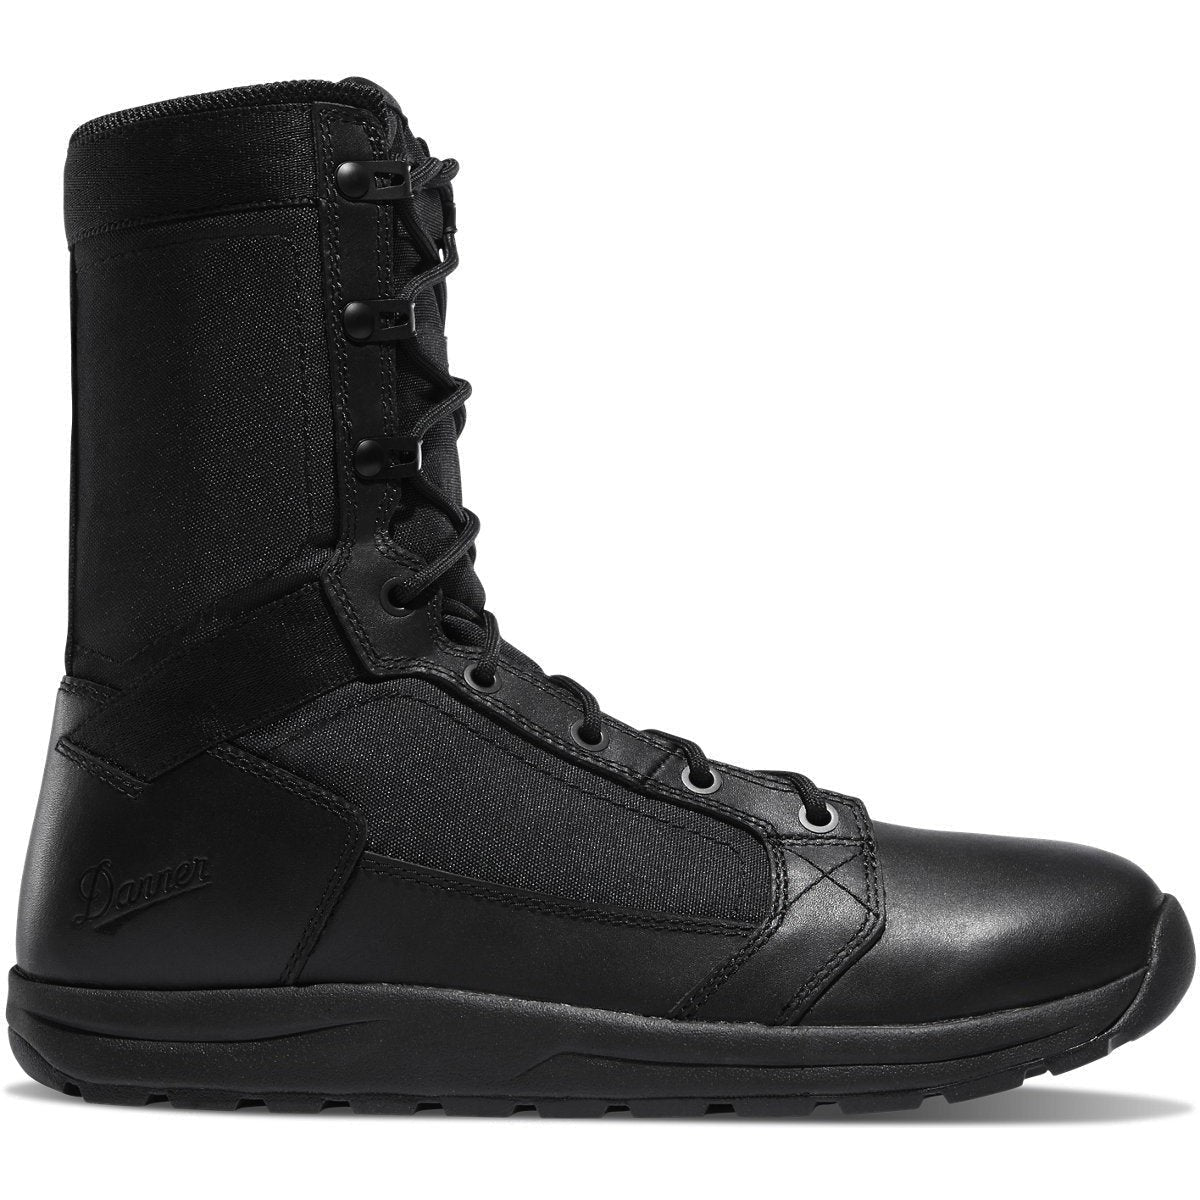 Danner Men's Tachyon 8" Duty Boot - Black - 50124 8 / Medium / Black - Overlook Boots